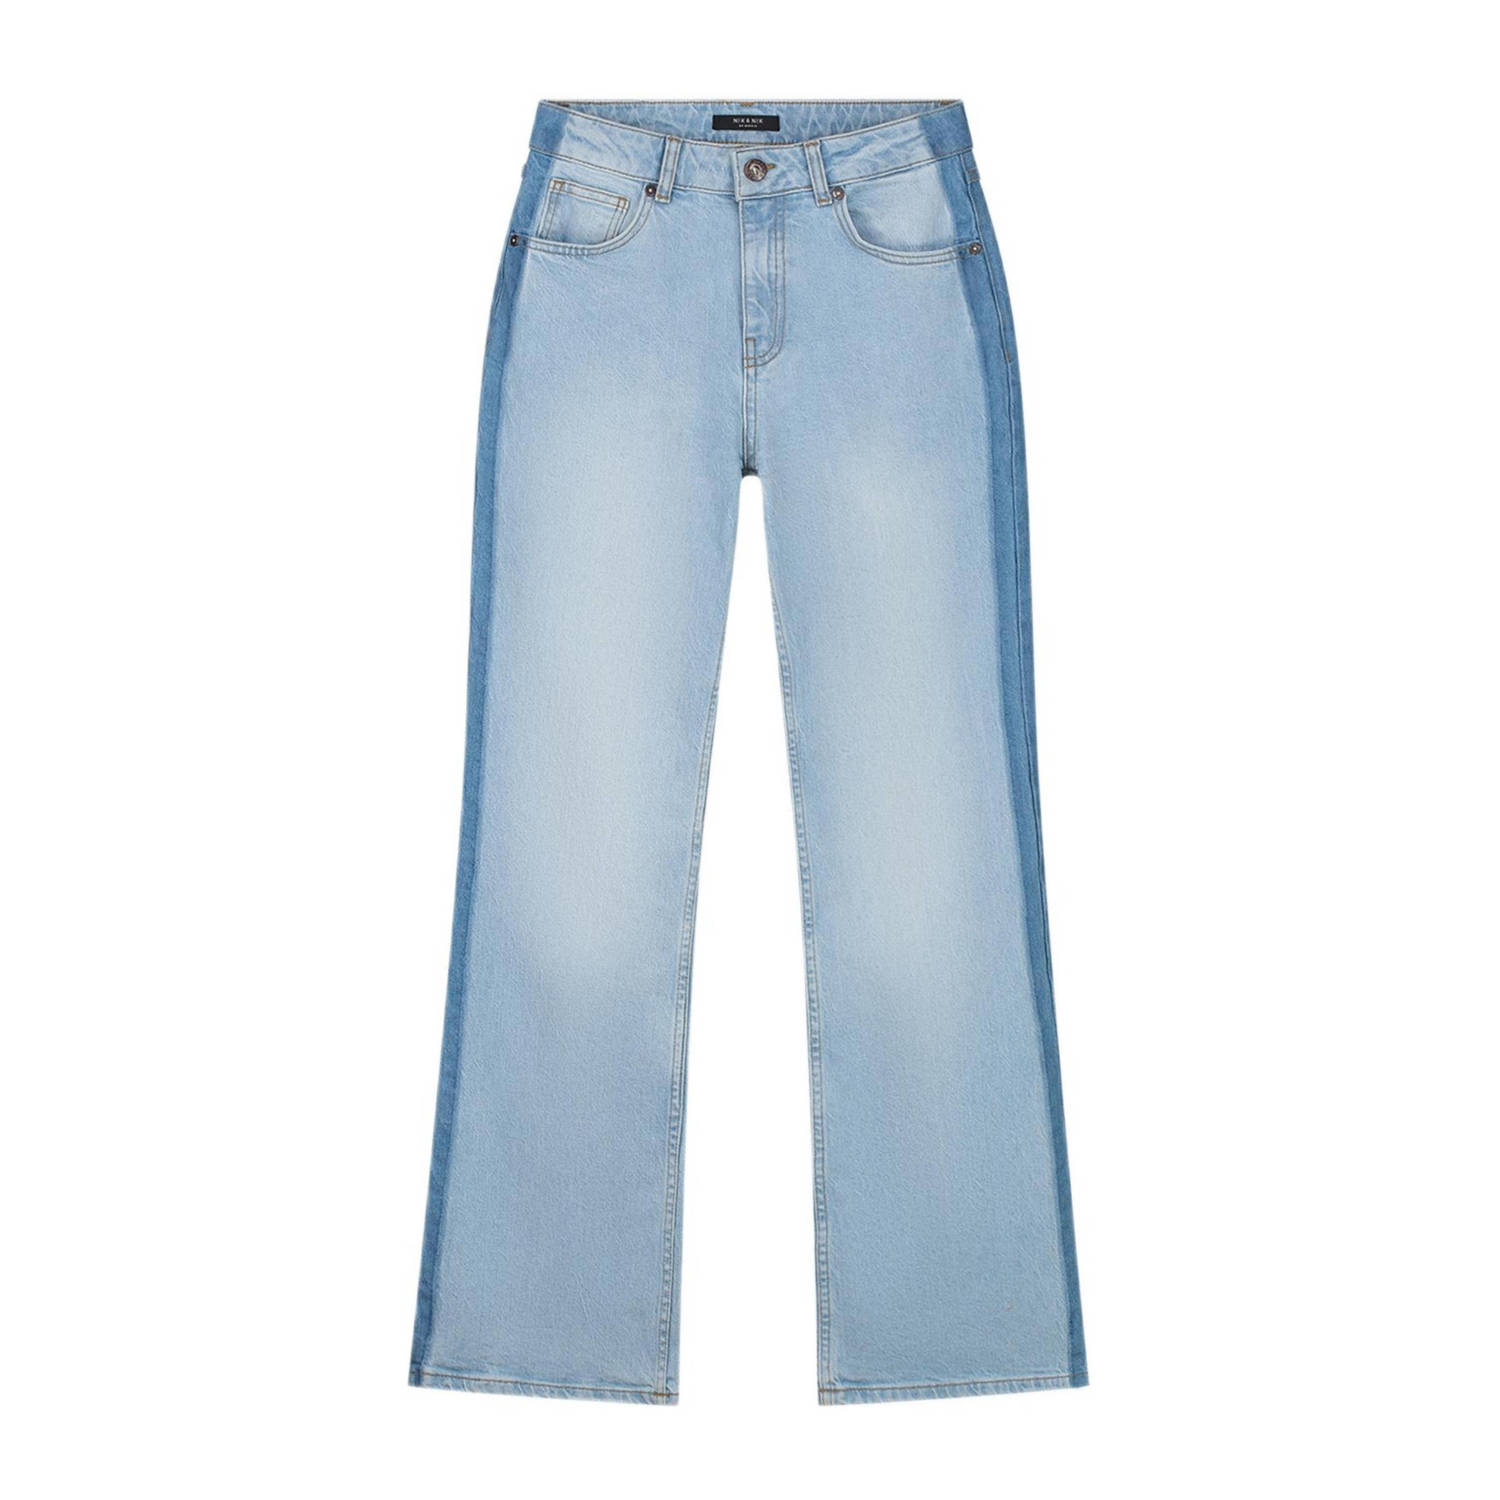 NIK&NIK wide leg jeans Flore light blue Blauw Meisjes Denim 128